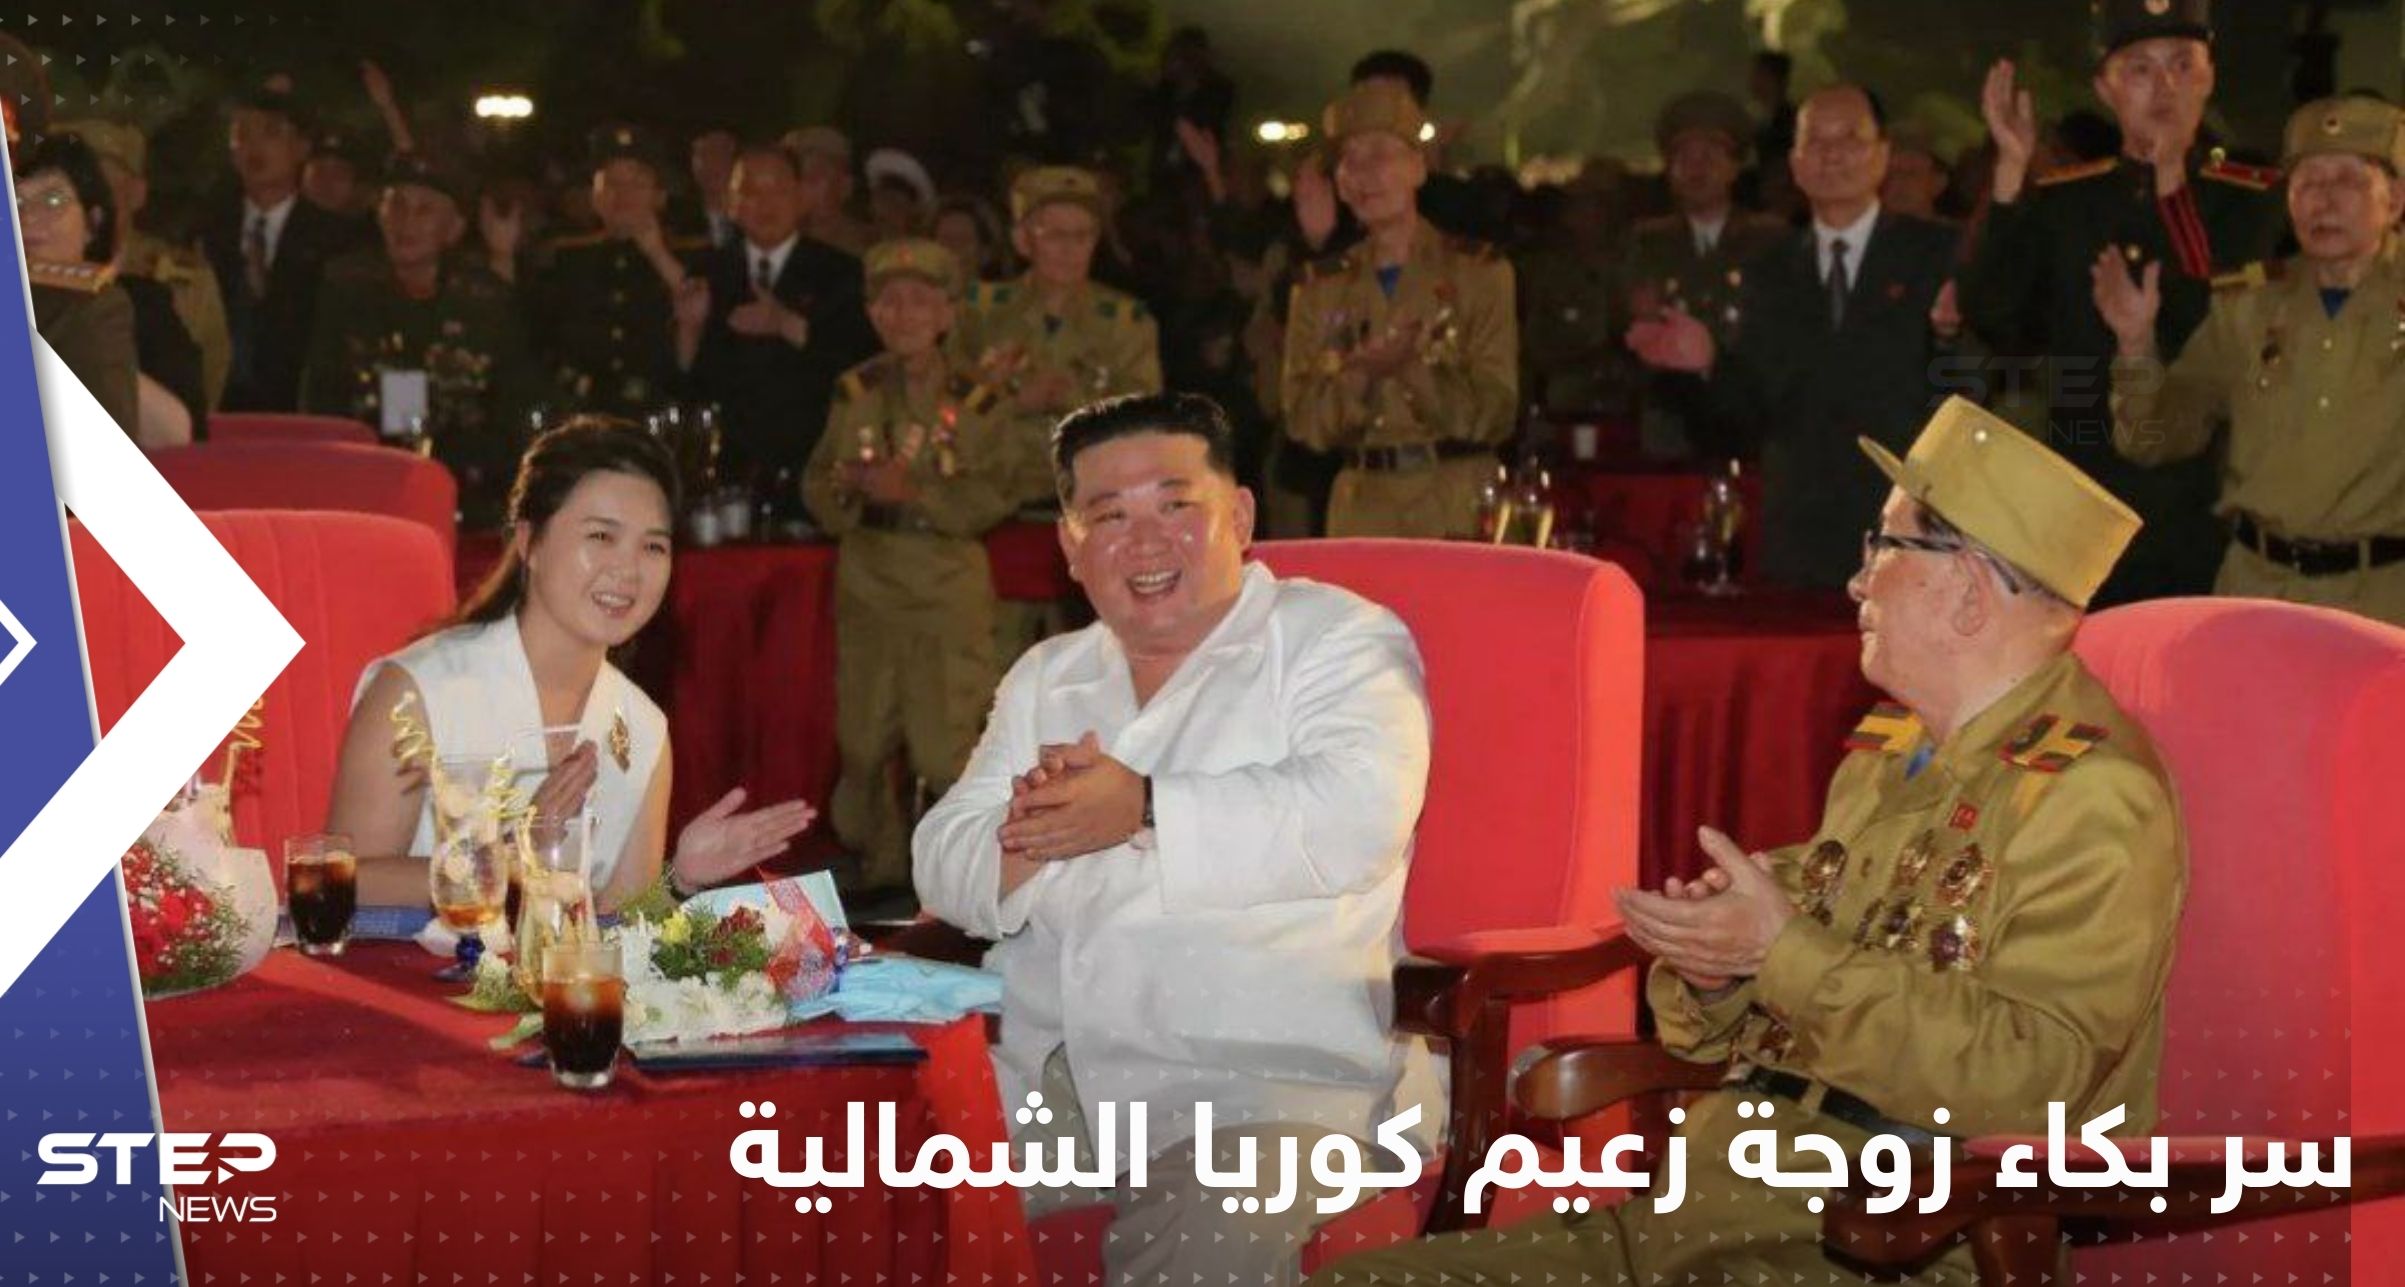 شاهد|| سر بكاء زوجة زعيم كوريا الشمالية وهي تقف بجانب كيم جونغ أون